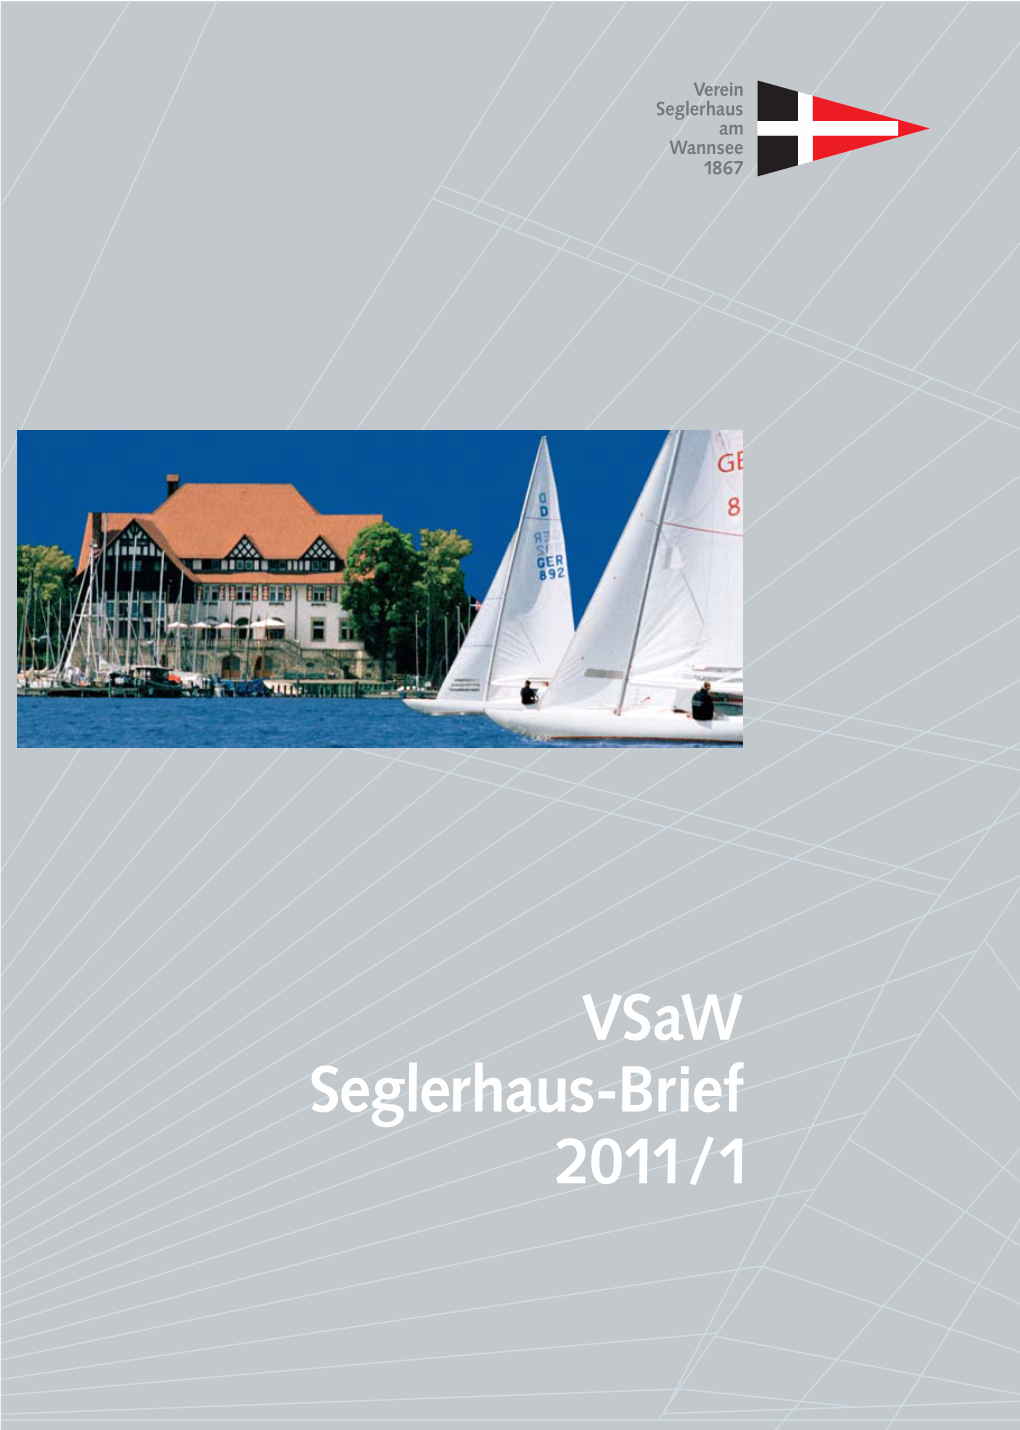 Vsaw Seglerhaus-Brief 2011/1